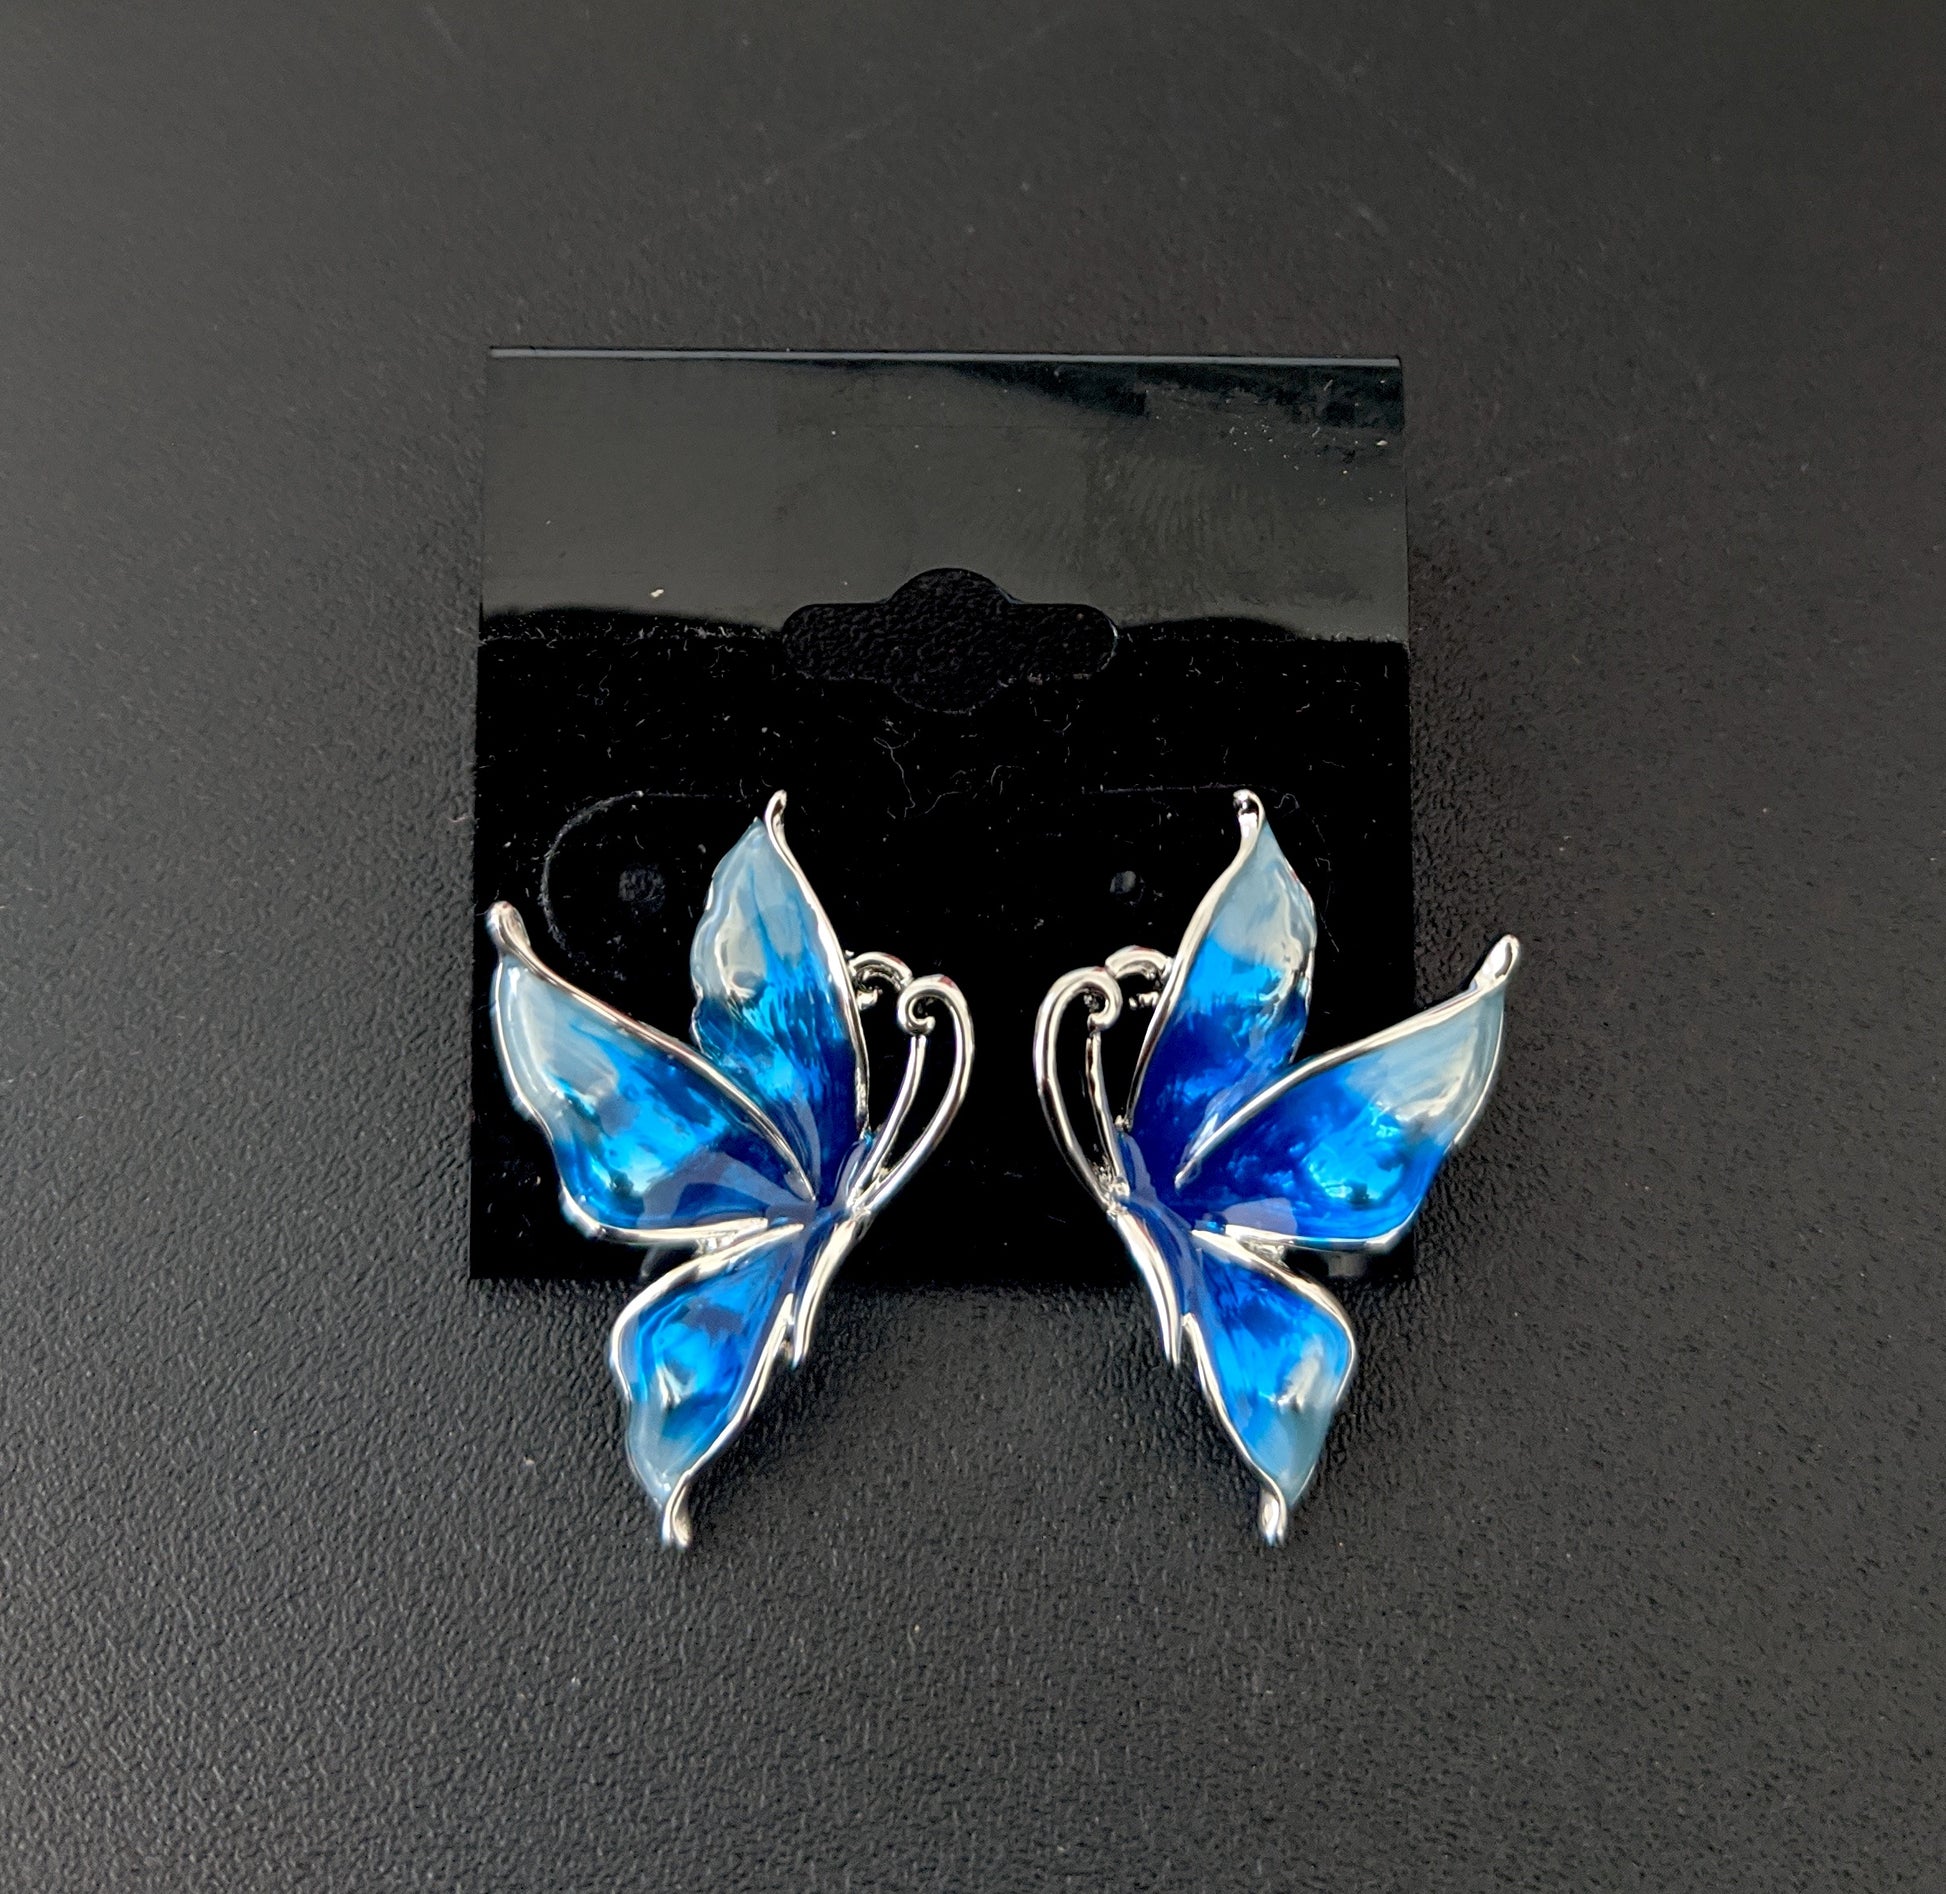 Enamel work platinum finish butterfly stud earring - Simpliful